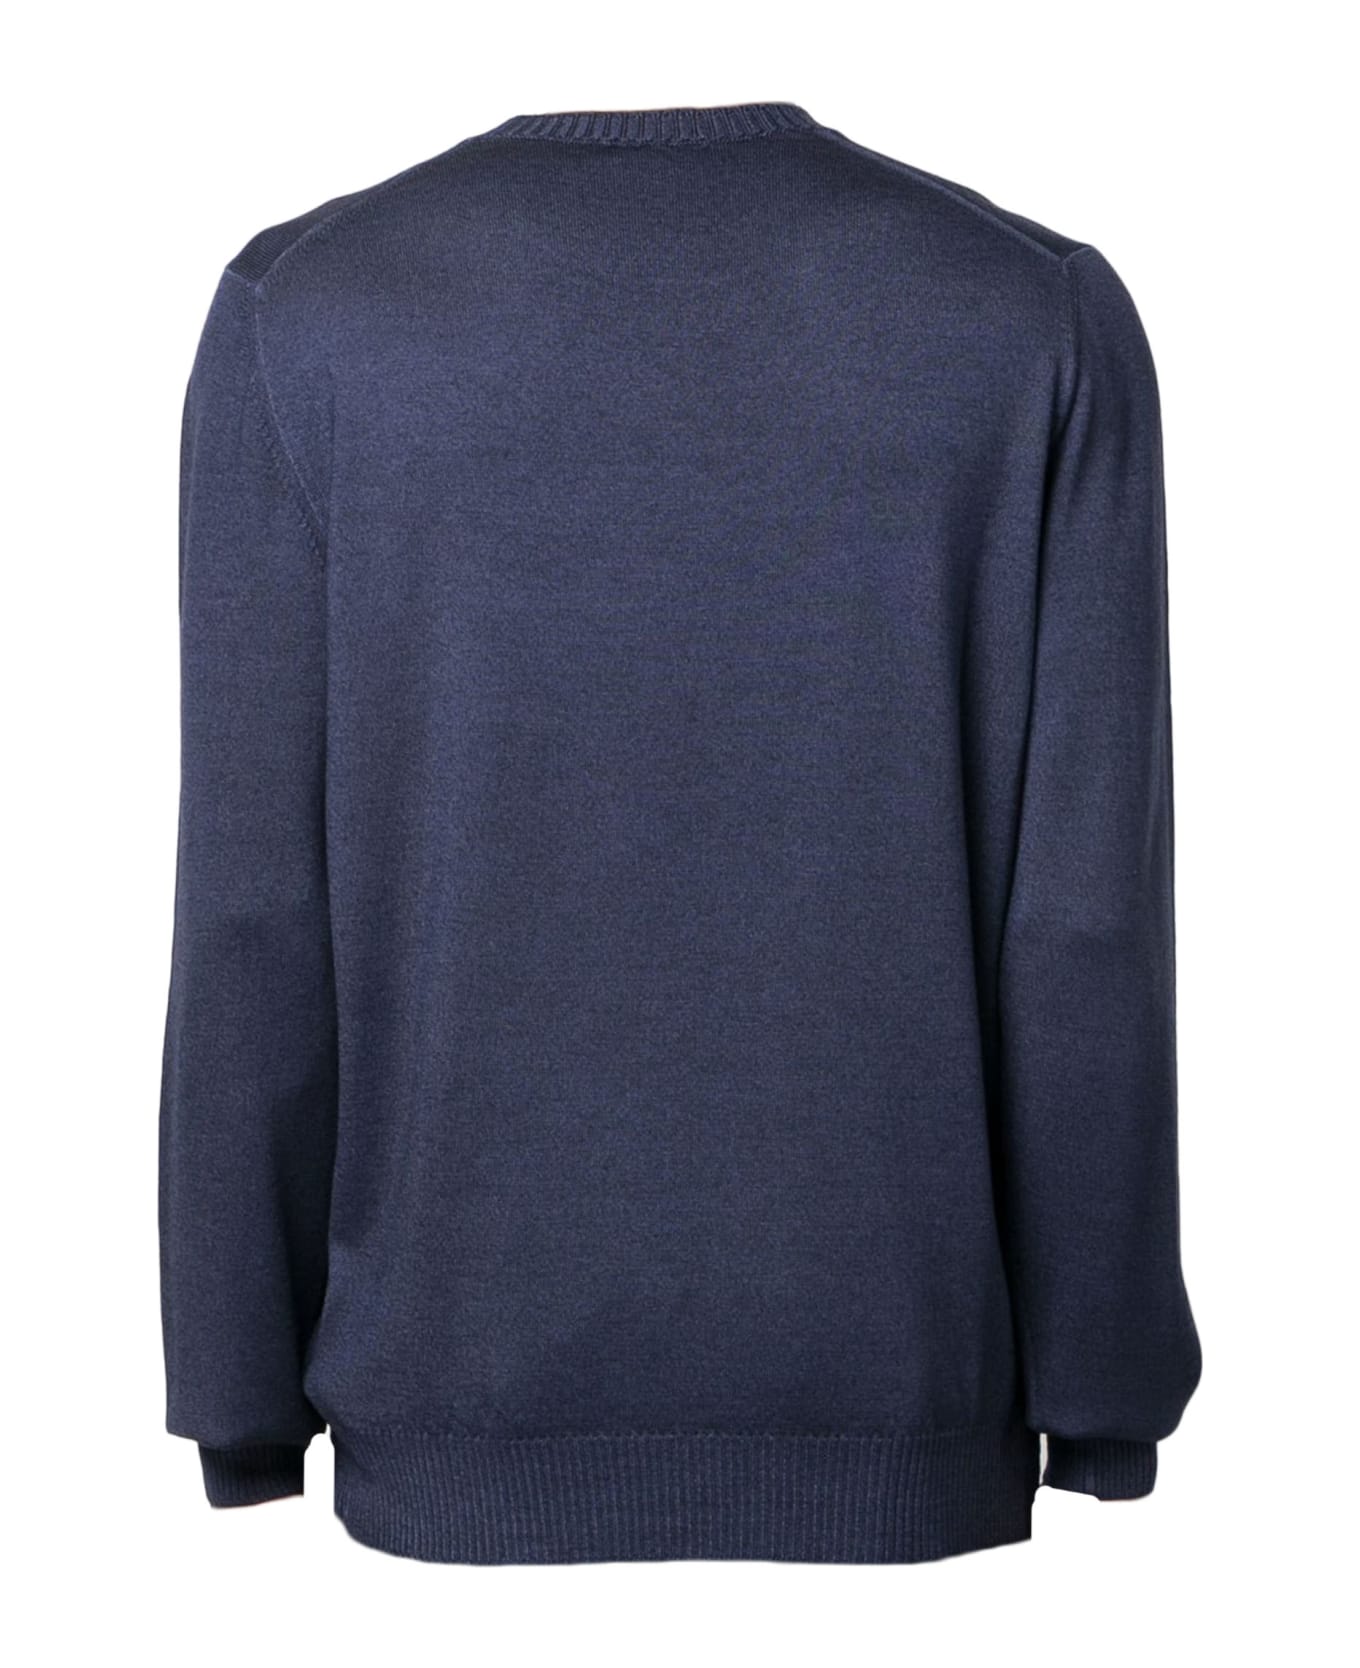 Fay Navy Blue Virgin Wool Jumper Sweater - BLU